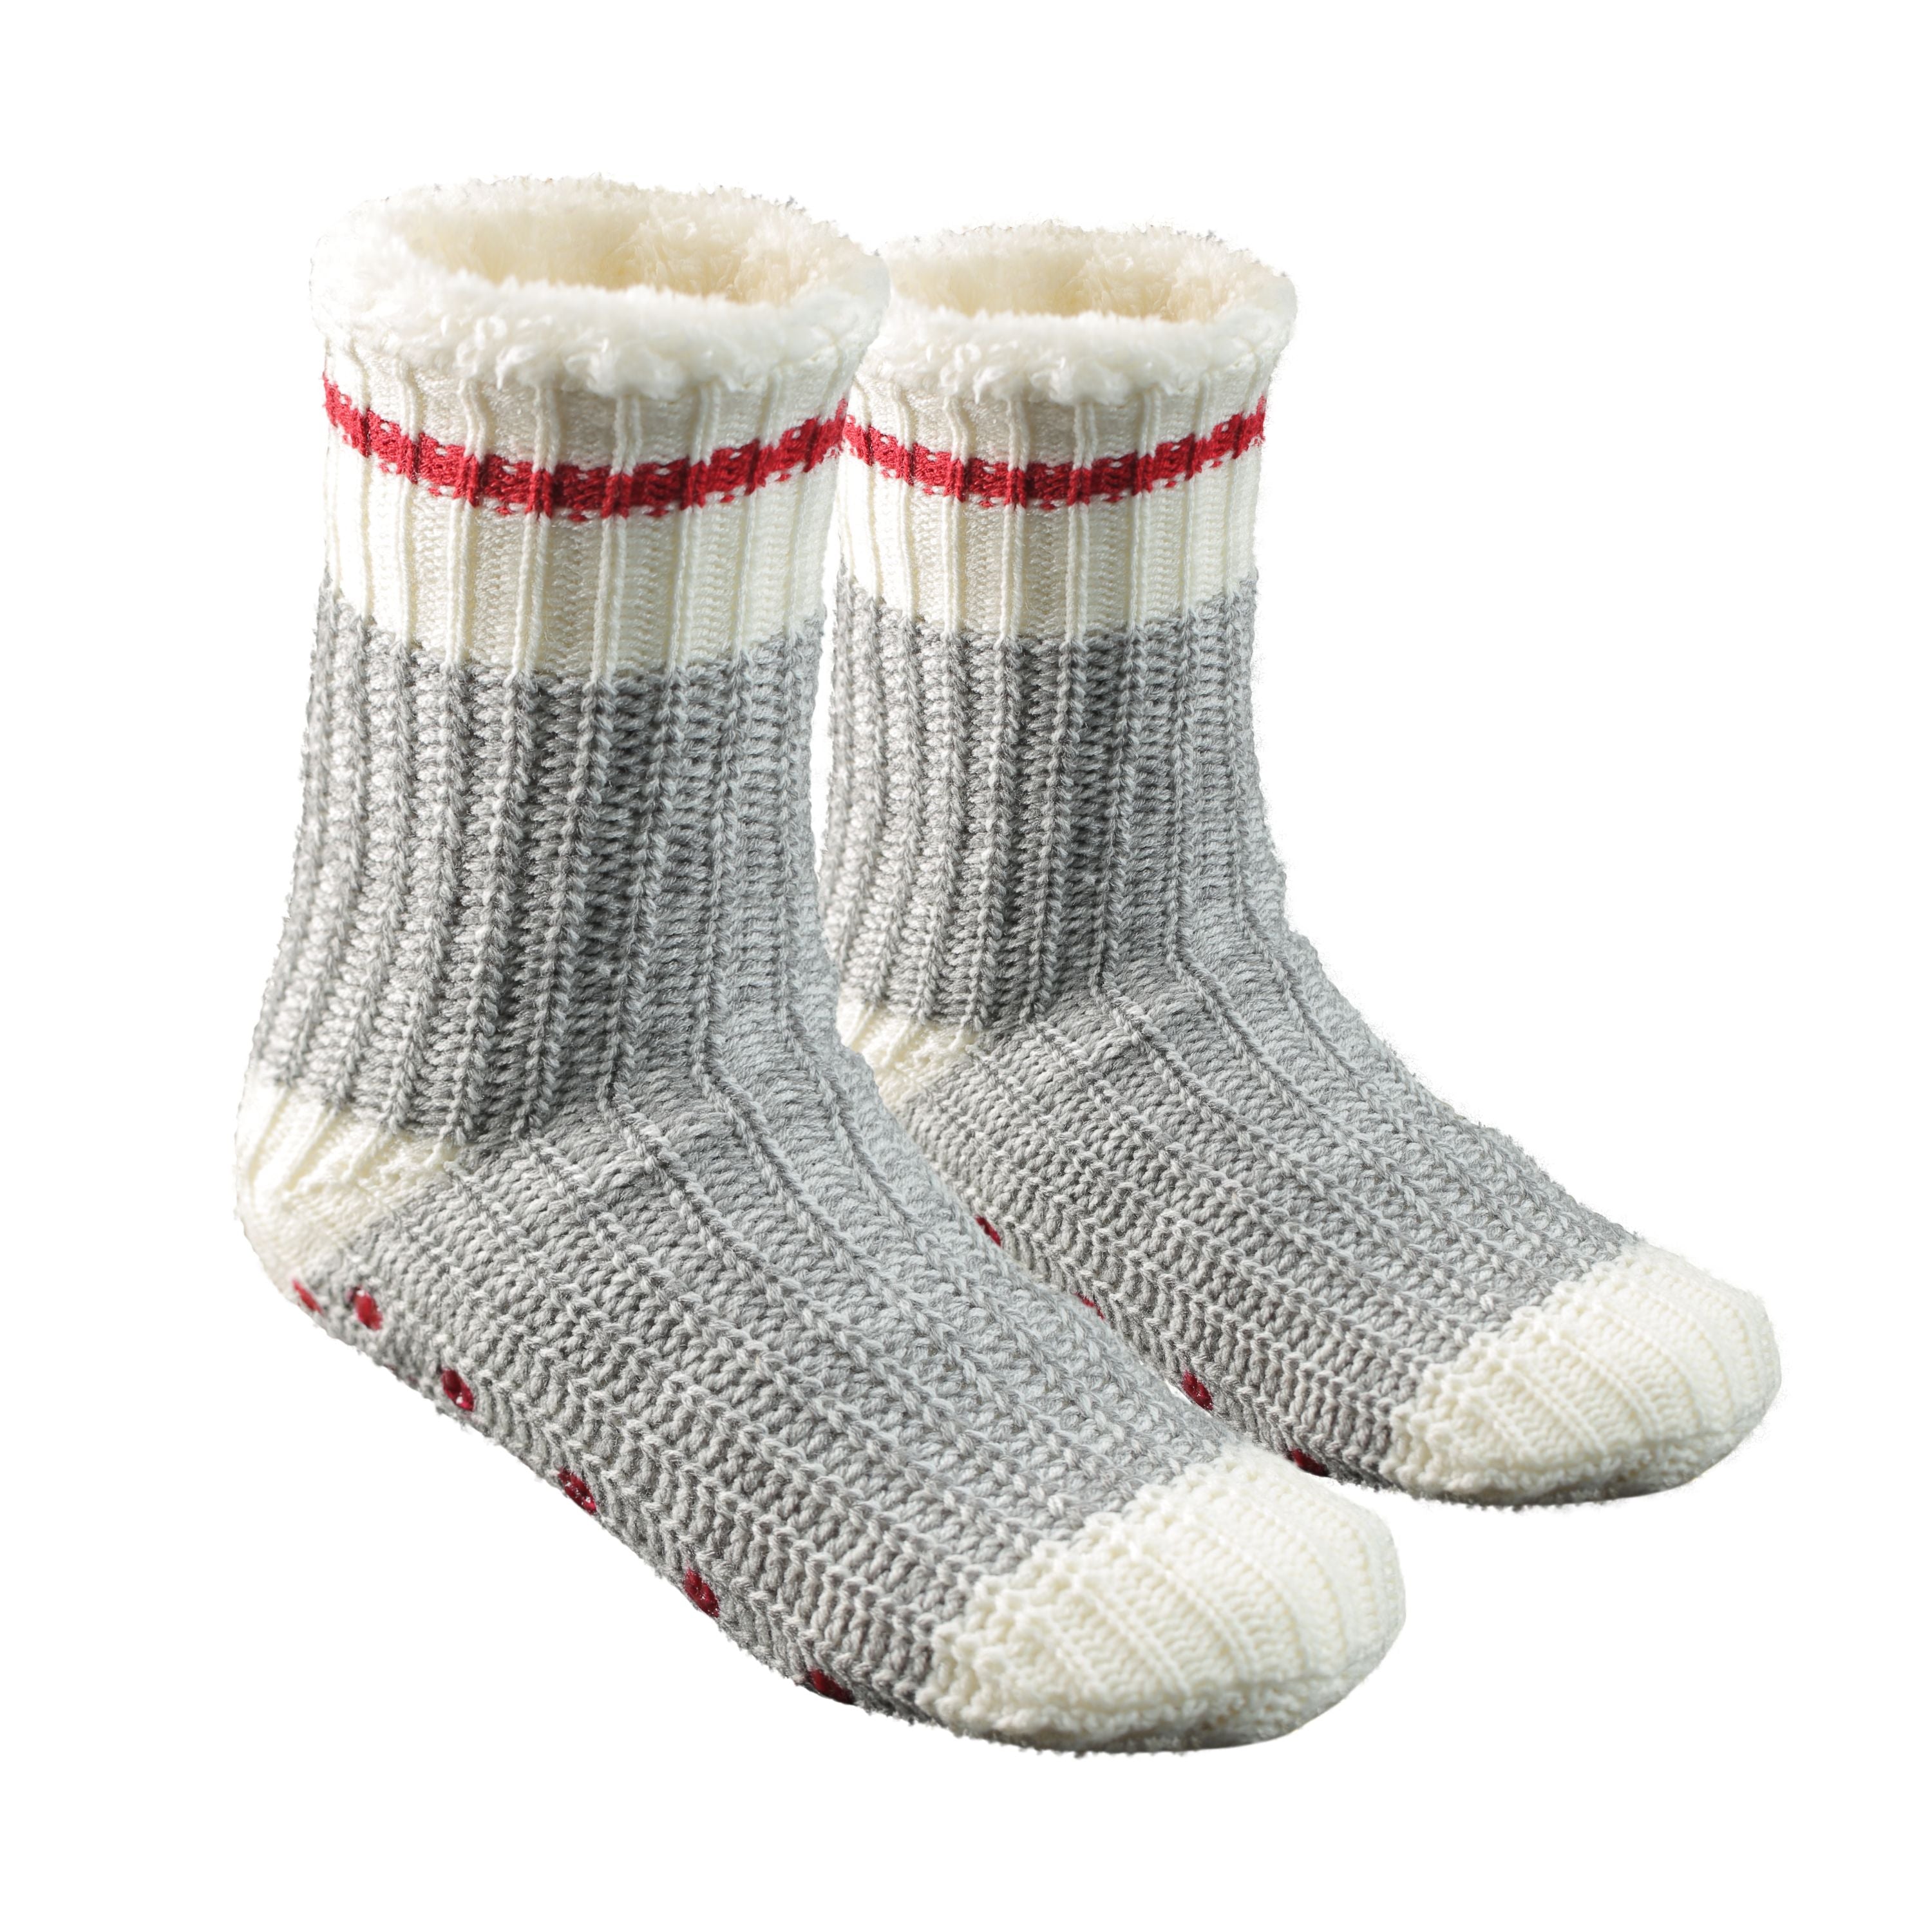 "Lucerne" slipper socks - Youth's